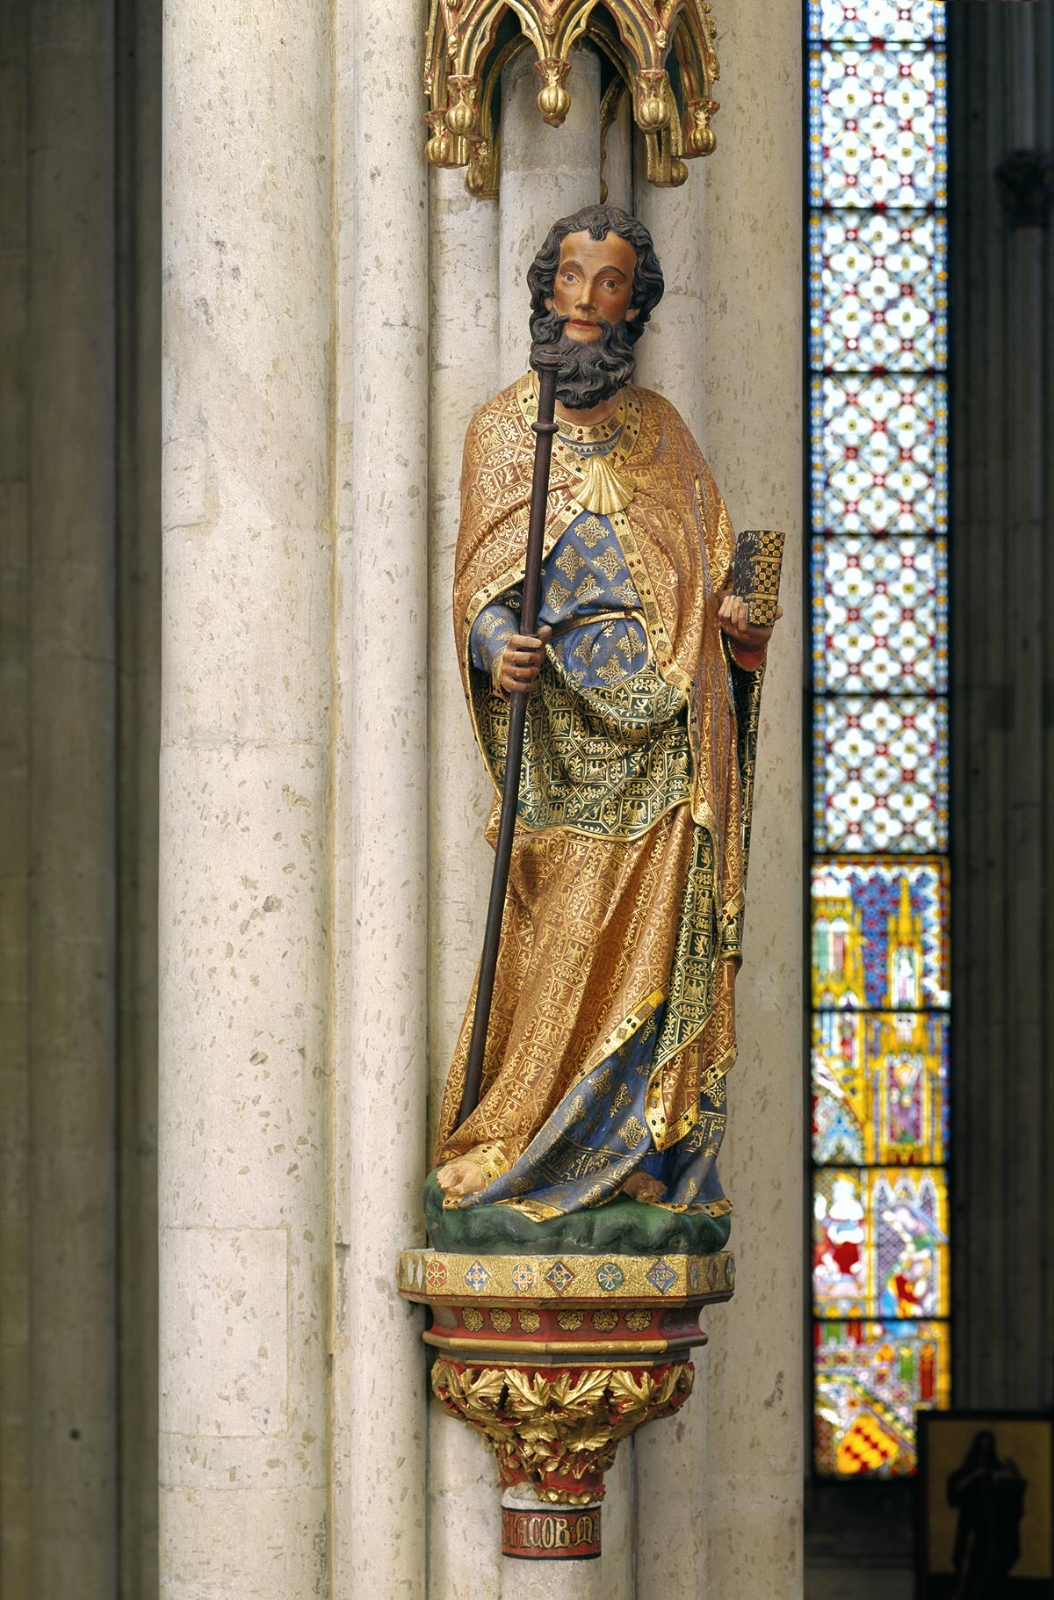 Der heilige Jakobus ist im Binnenchor des Kölner Doms dargestellt